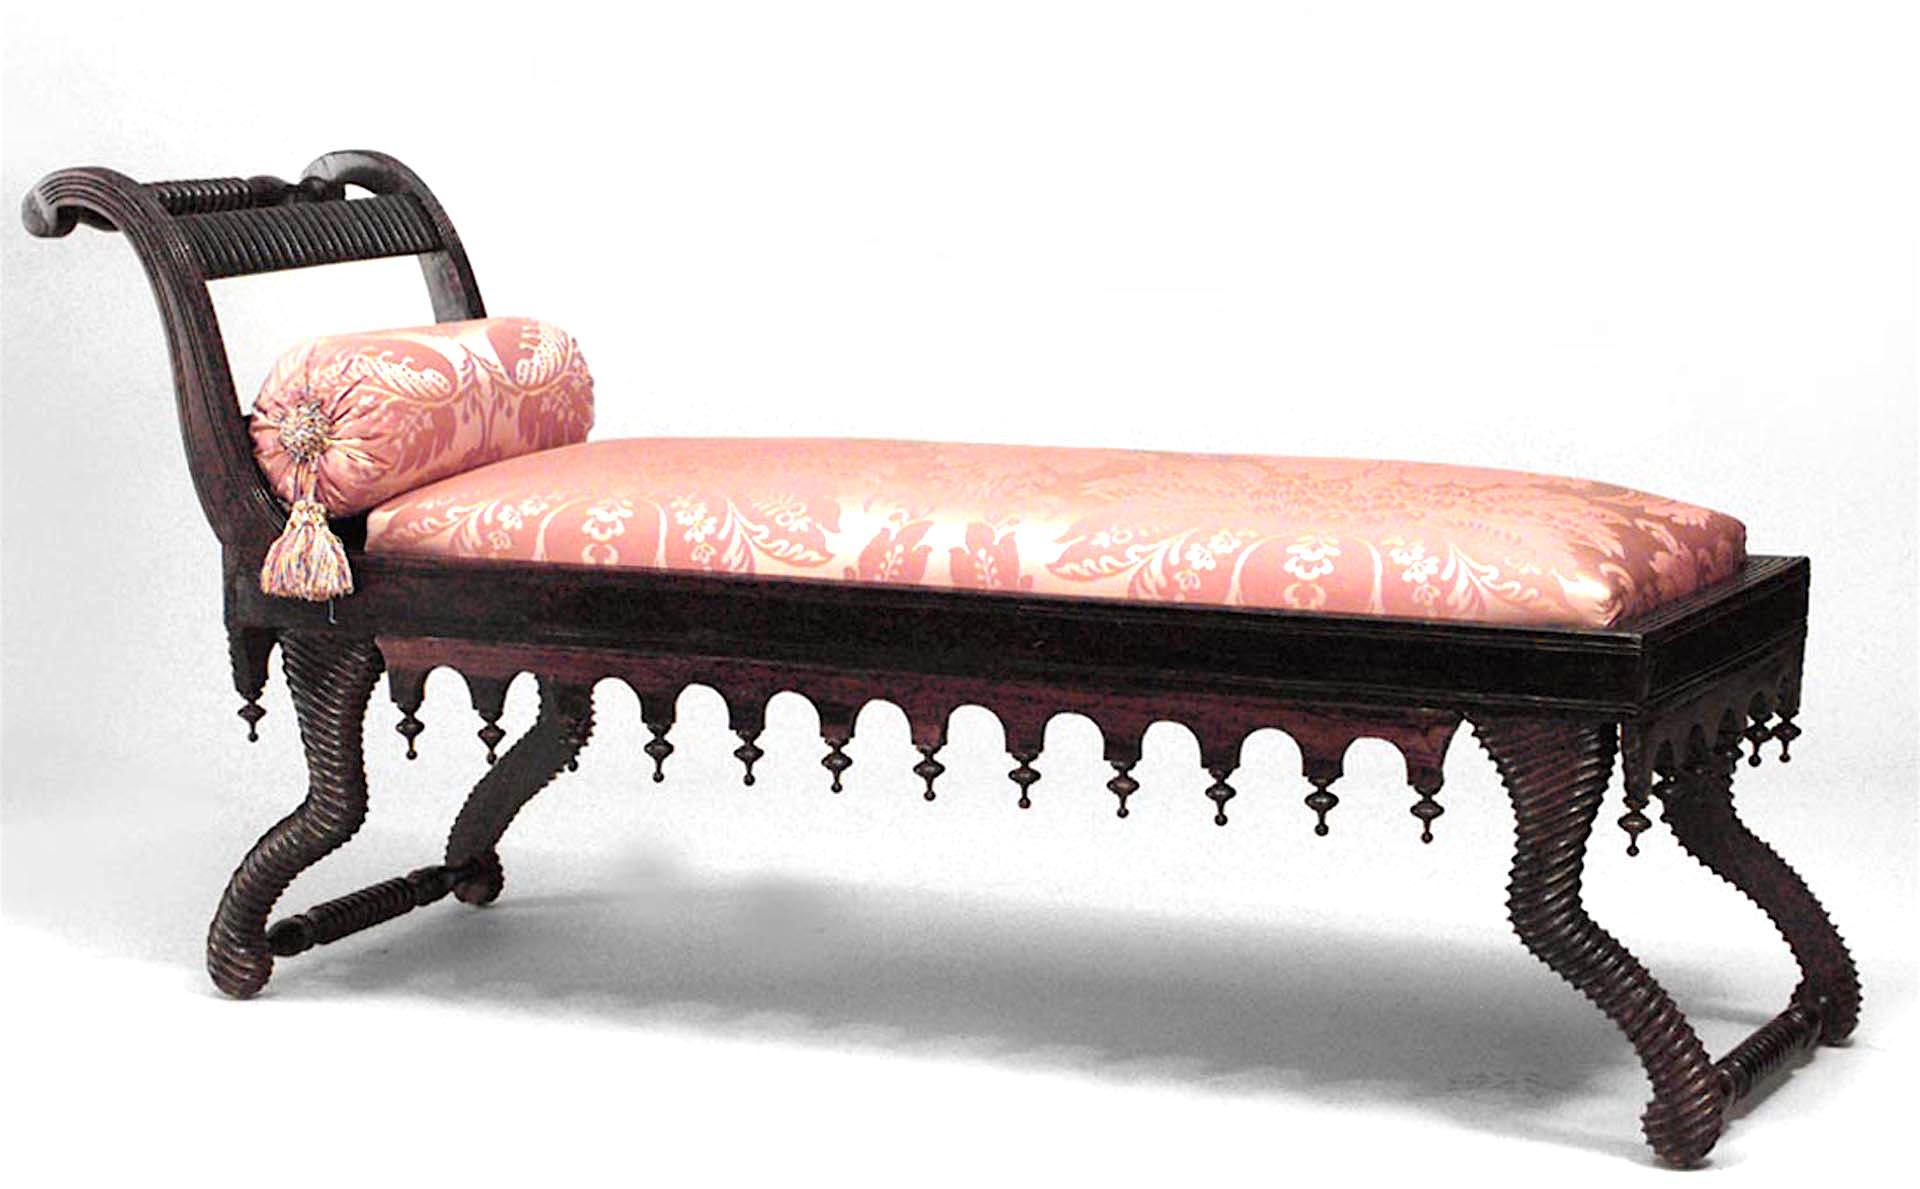 Chaise de style Régence anglaise (19e siècle) en bois de rose avec un design en forme de tourbillon et de fleuron, avec une tapisserie de couleur rouille.
